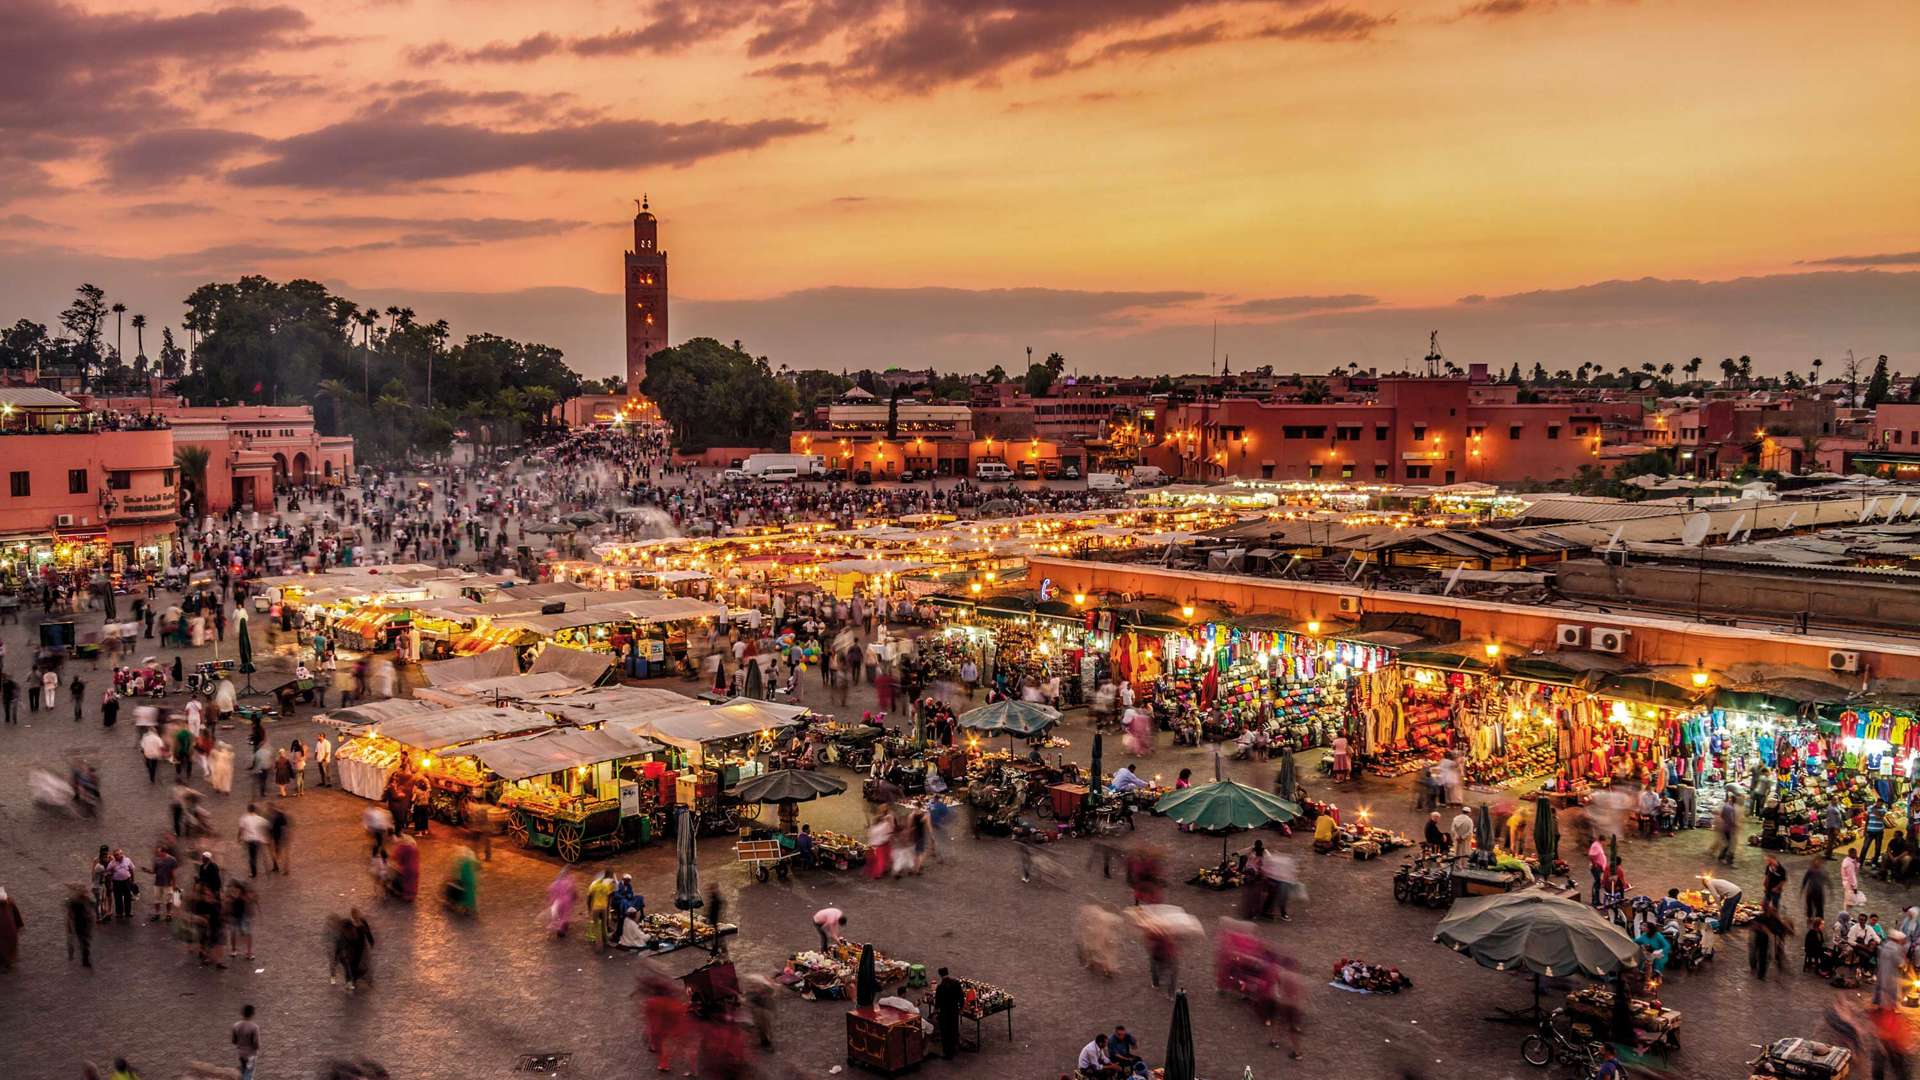 Jamaa El Fna Market Square, Marrakesh, Morocco